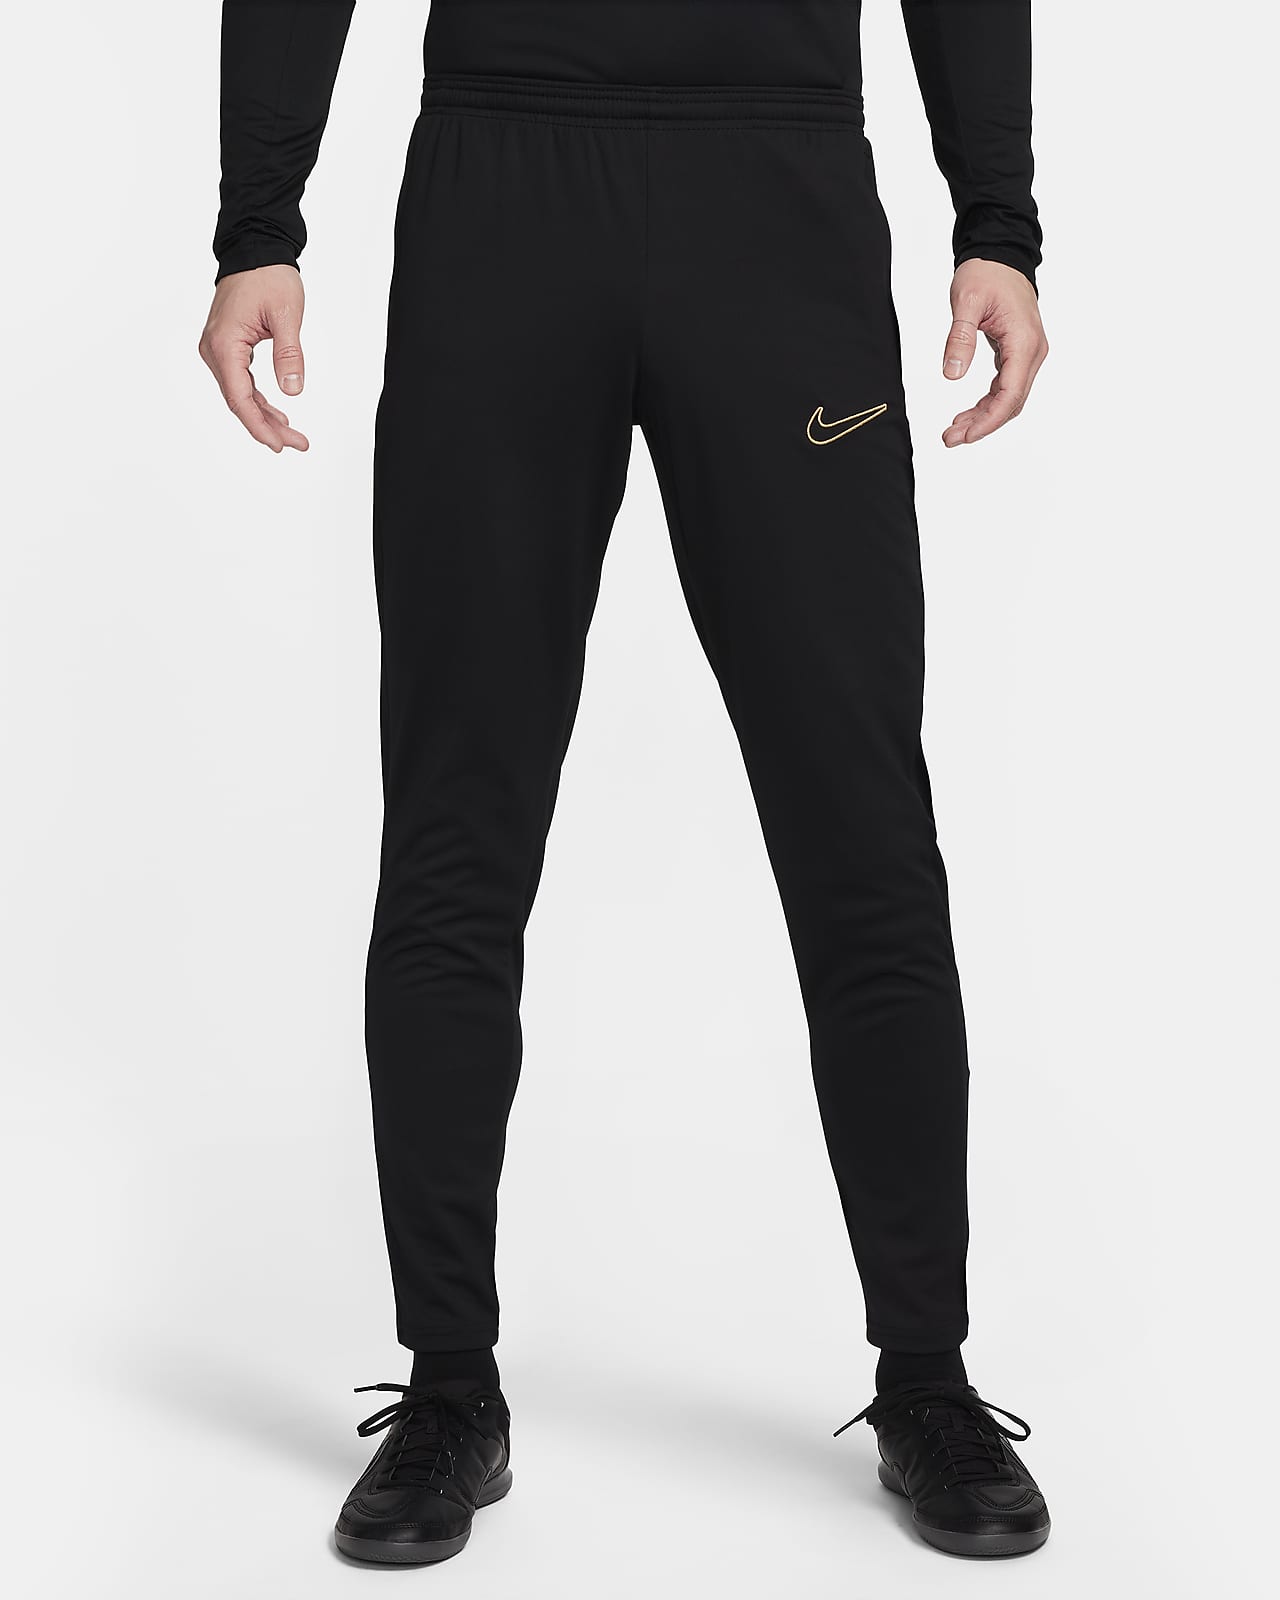 Męskie spodnie piłkarskie Dri-FIT Nike Academy